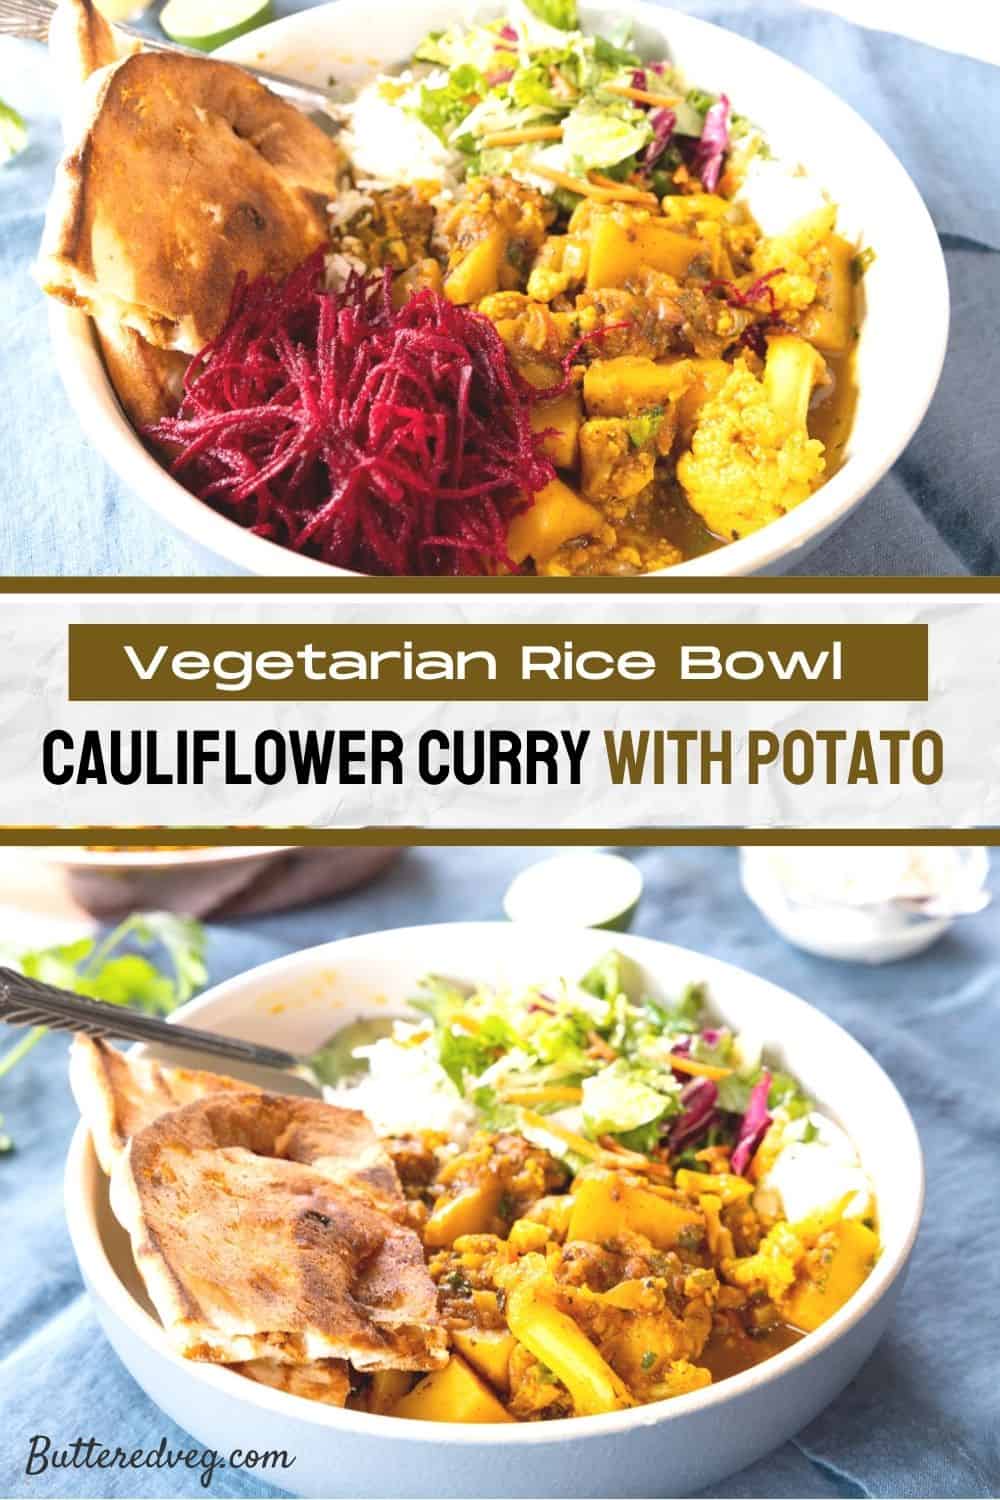 Cauliflower Curry with Potato (Aloo Gobi)